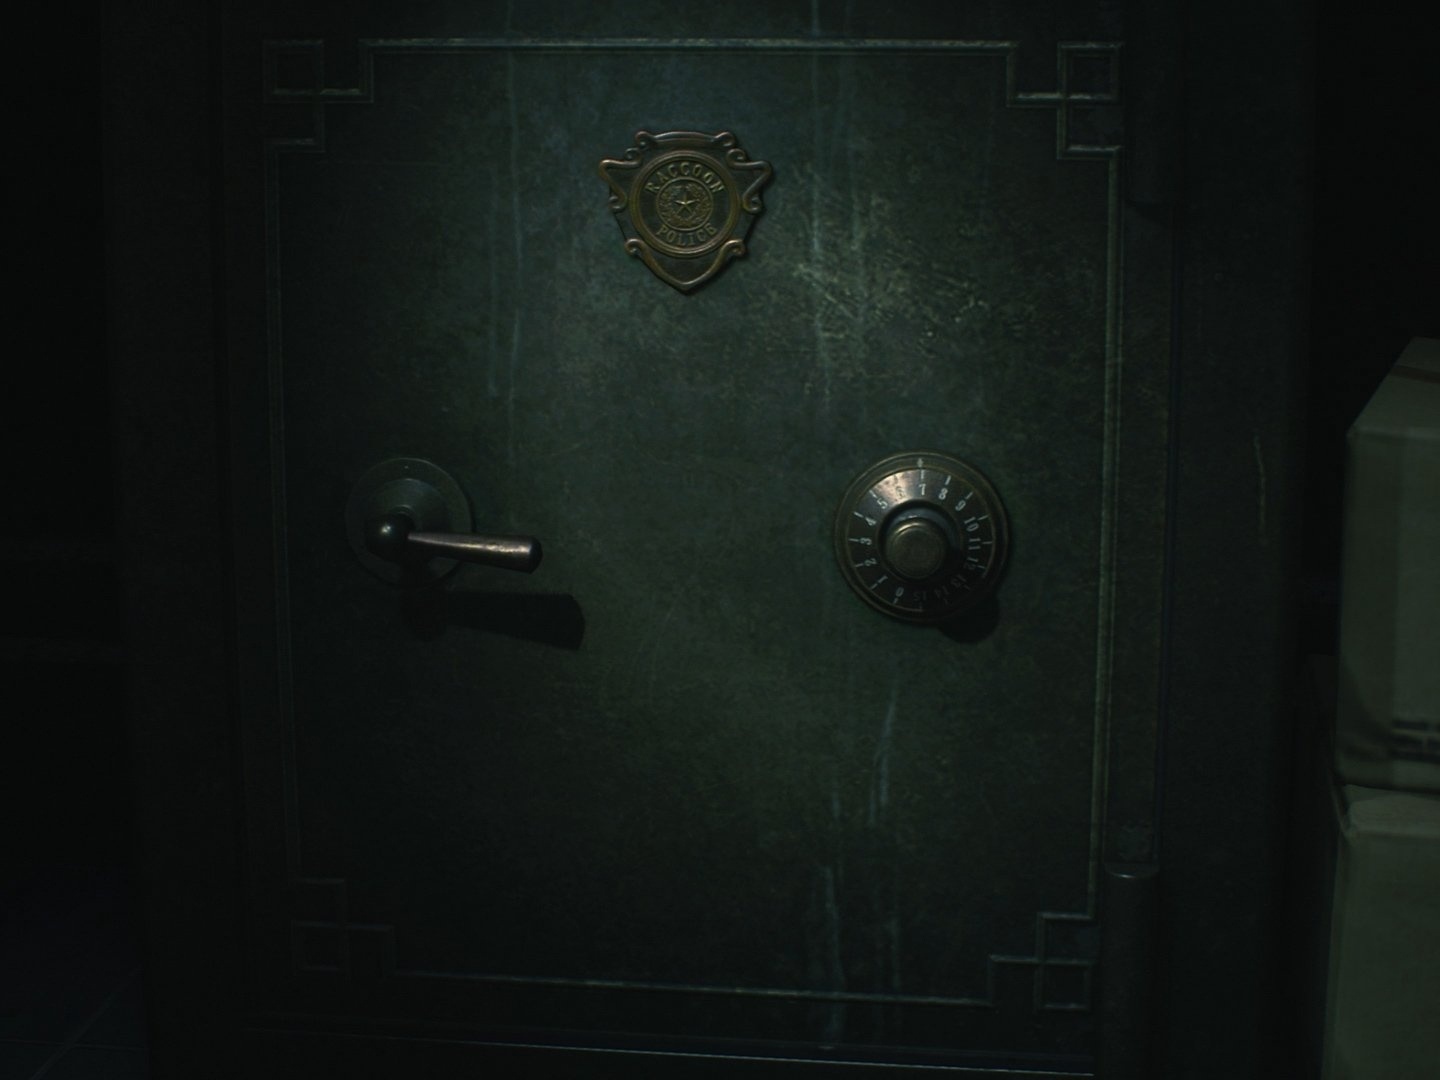 Resident Evil 2: Localização dos itens principais